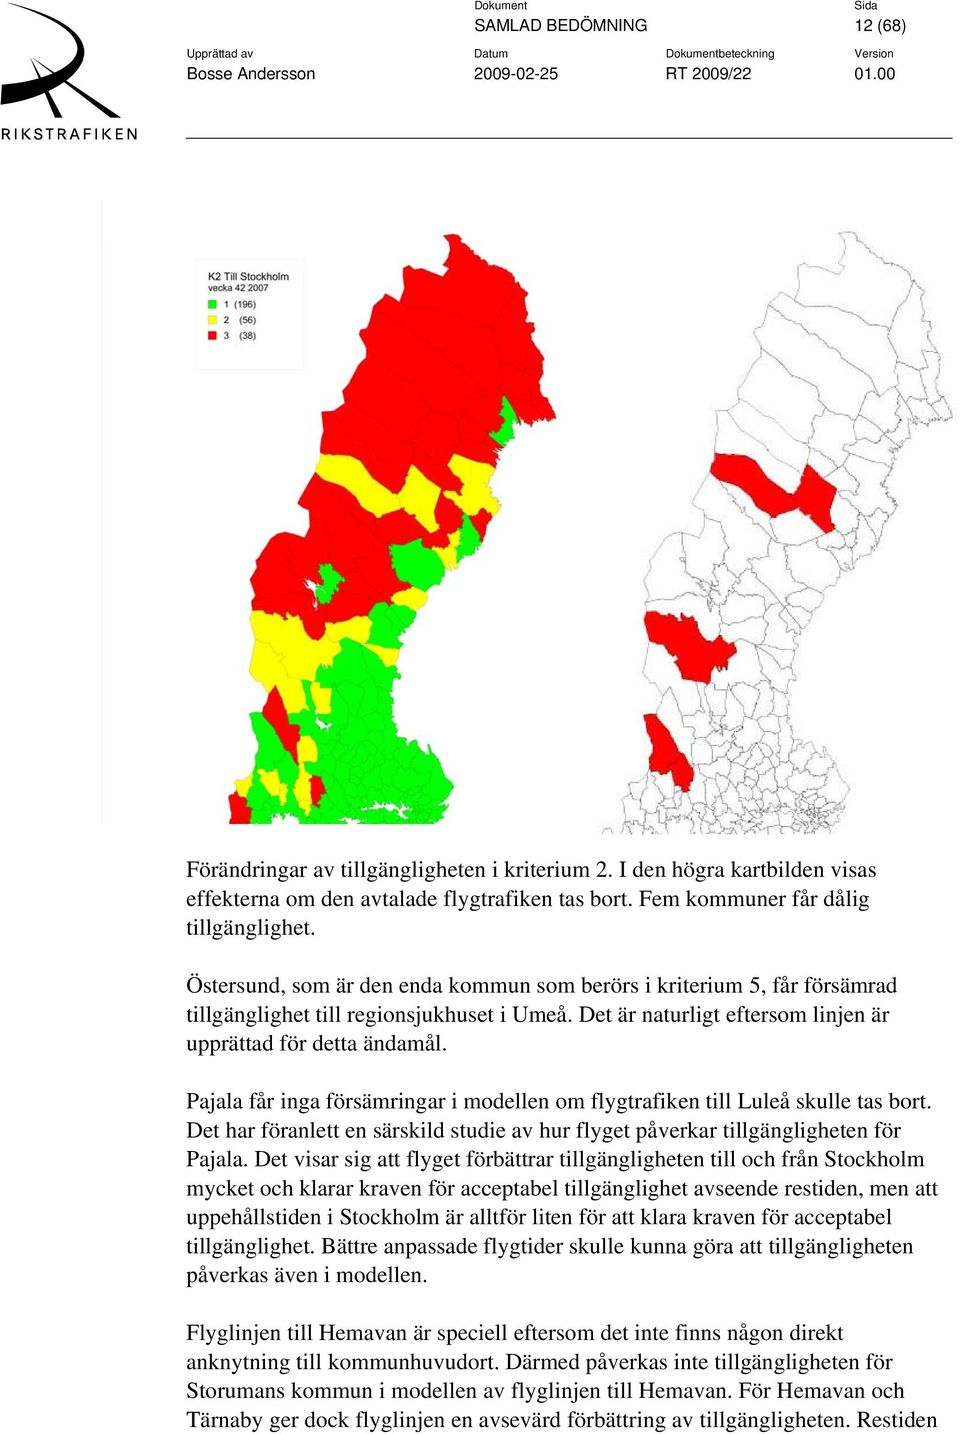 Pajala får inga försämringar i modellen om flygtrafiken till Luleå skulle tas bort. Det har föranlett en särskild studie av hur flyget påverkar tillgängligheten för Pajala.